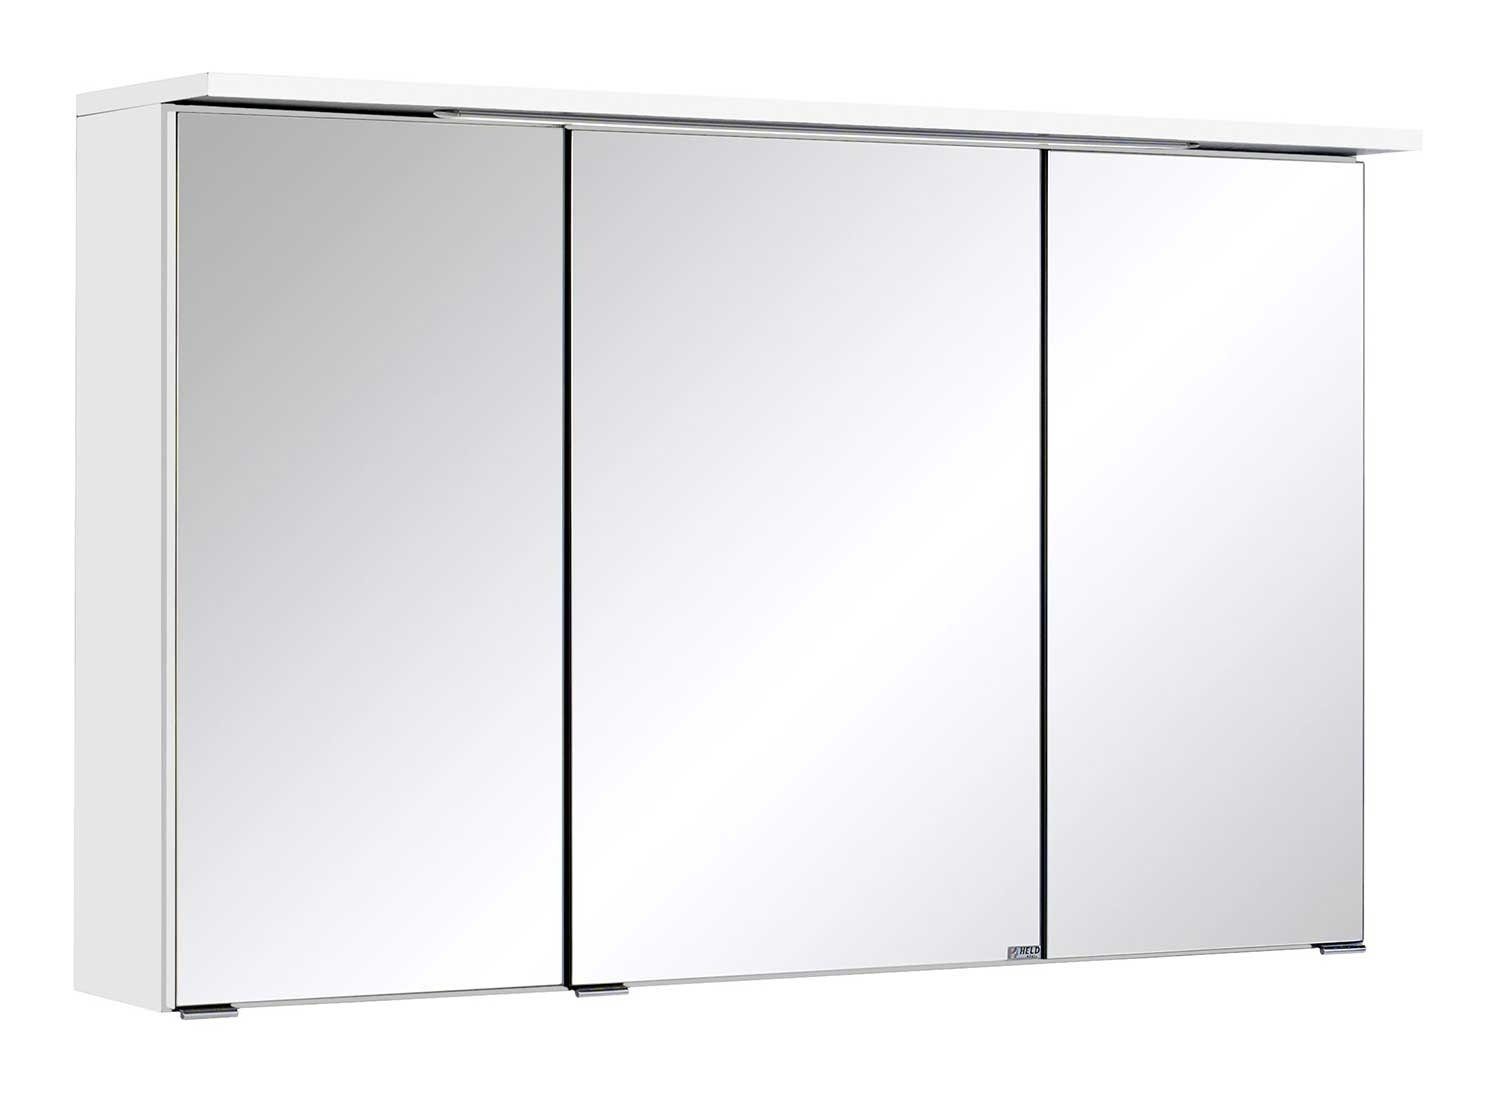 HELD MÖBEL Spiegelschrank MULTI, B 100 cm, Weiß, mit LED-Kranzbodenbeleuchtung | Spiegelschränke